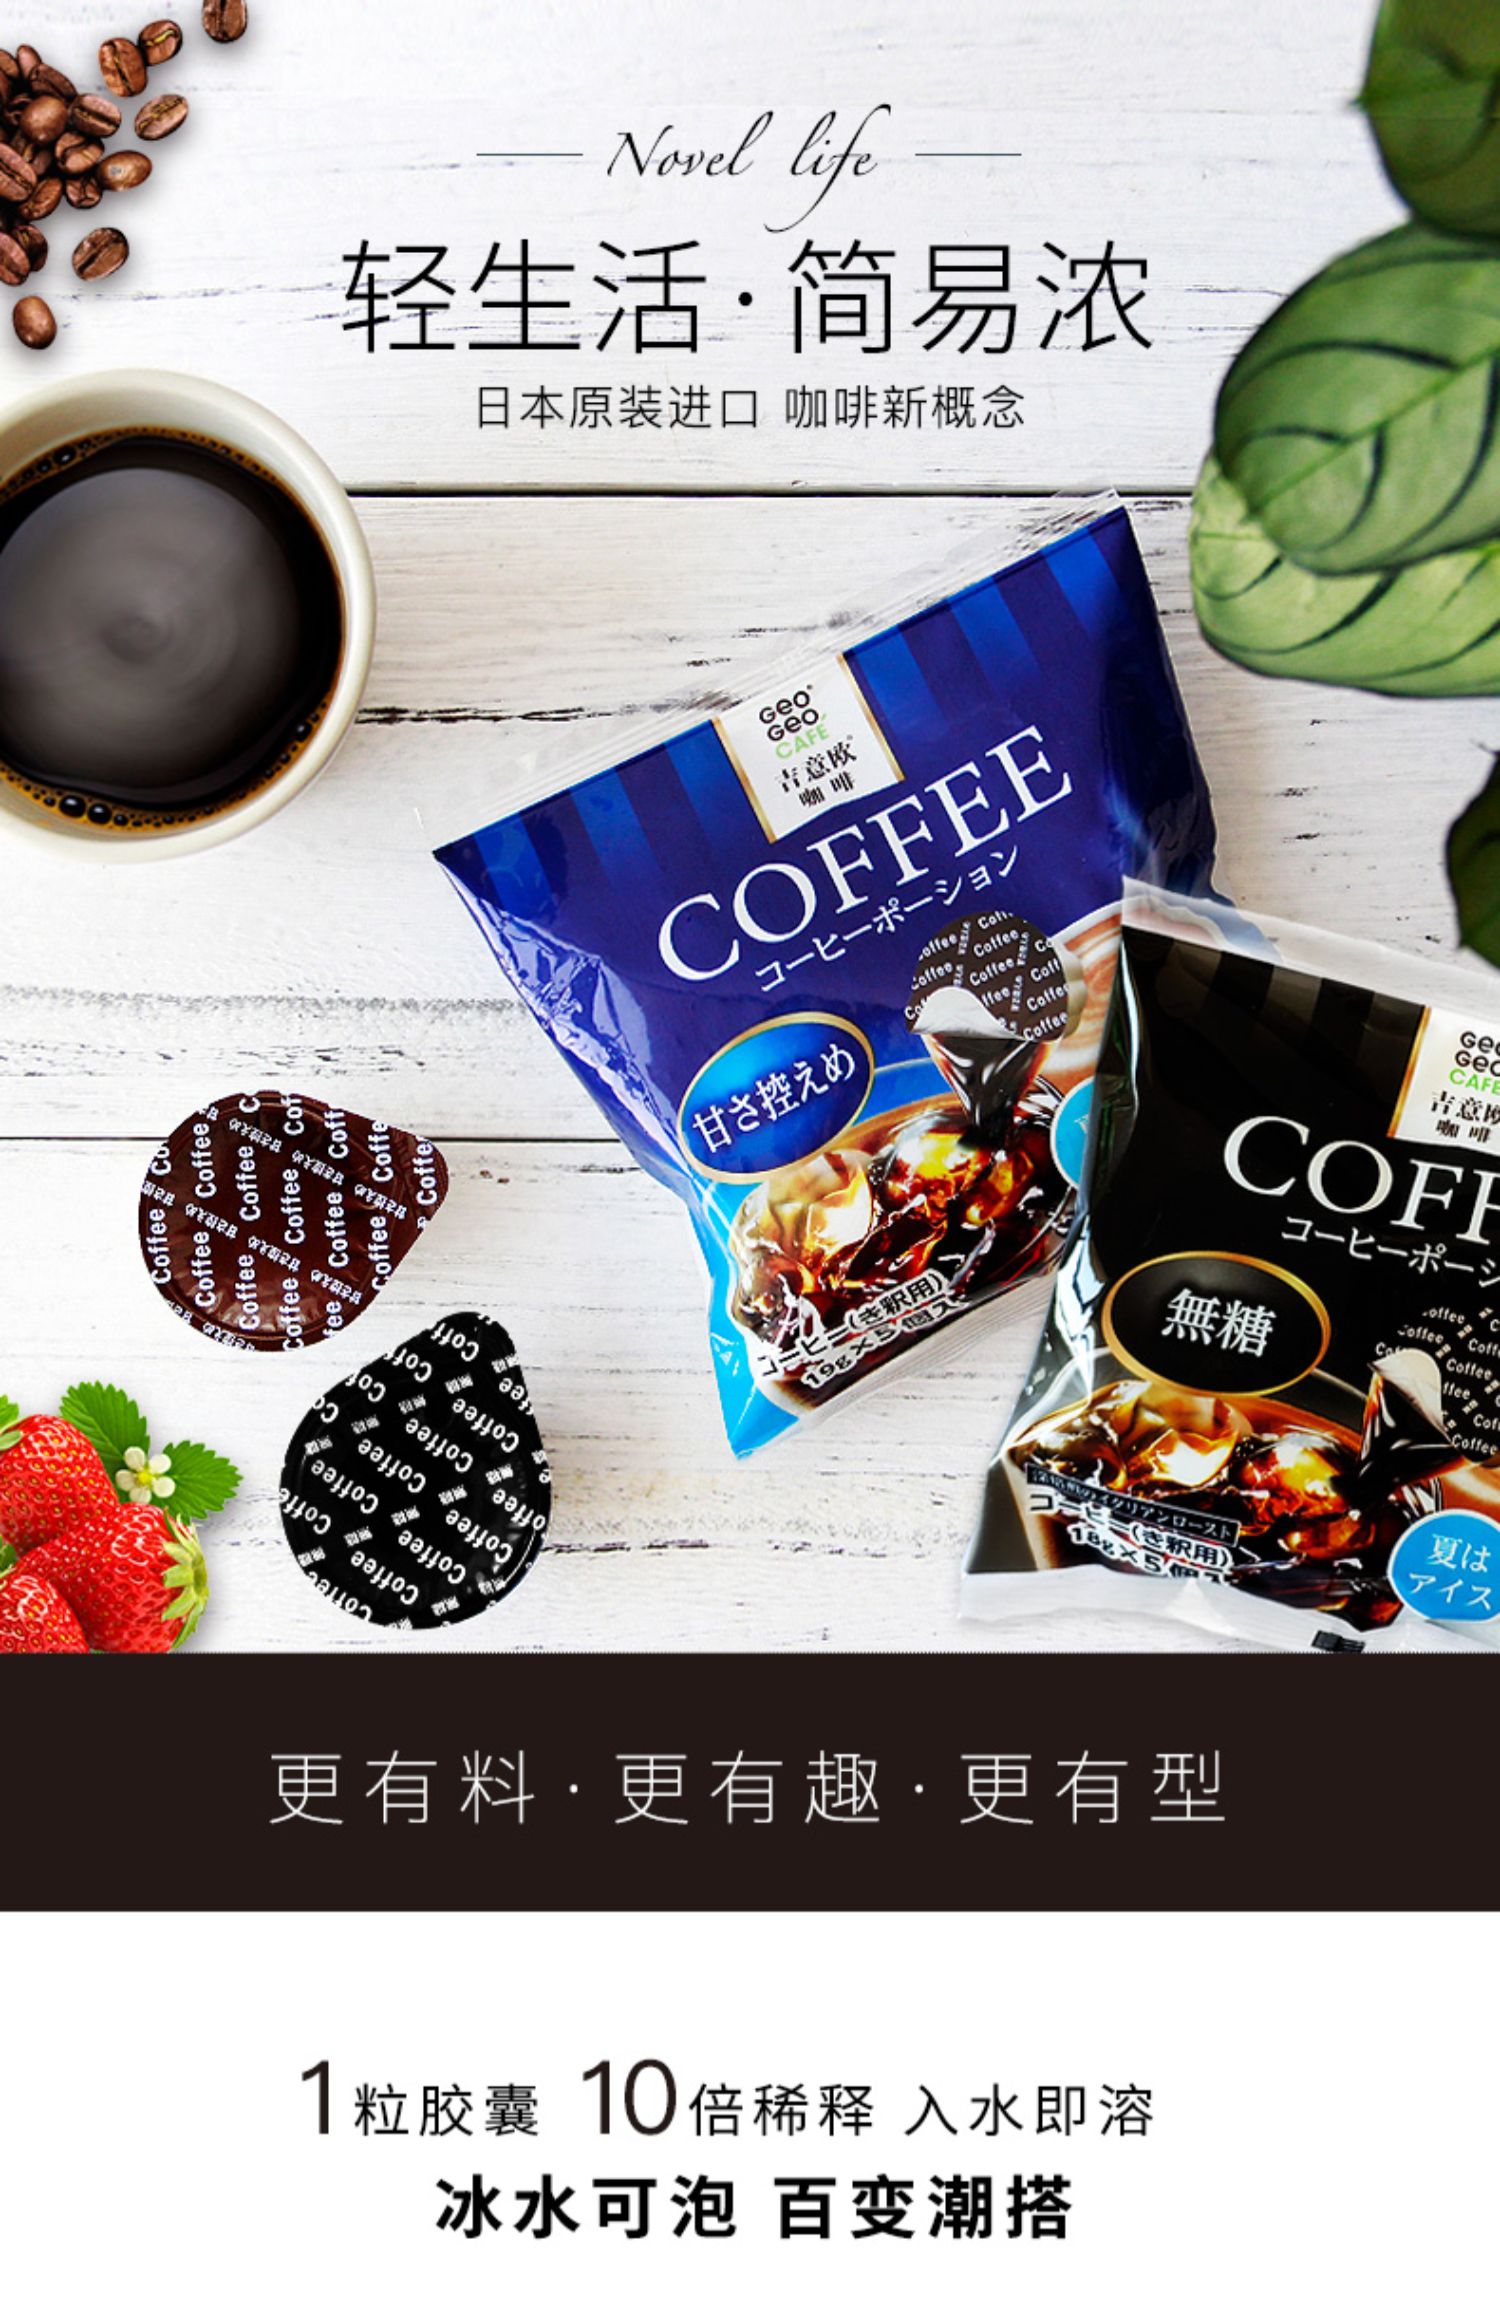 吉意欧日本进口液体胶囊咖啡懒人速溶黑咖啡